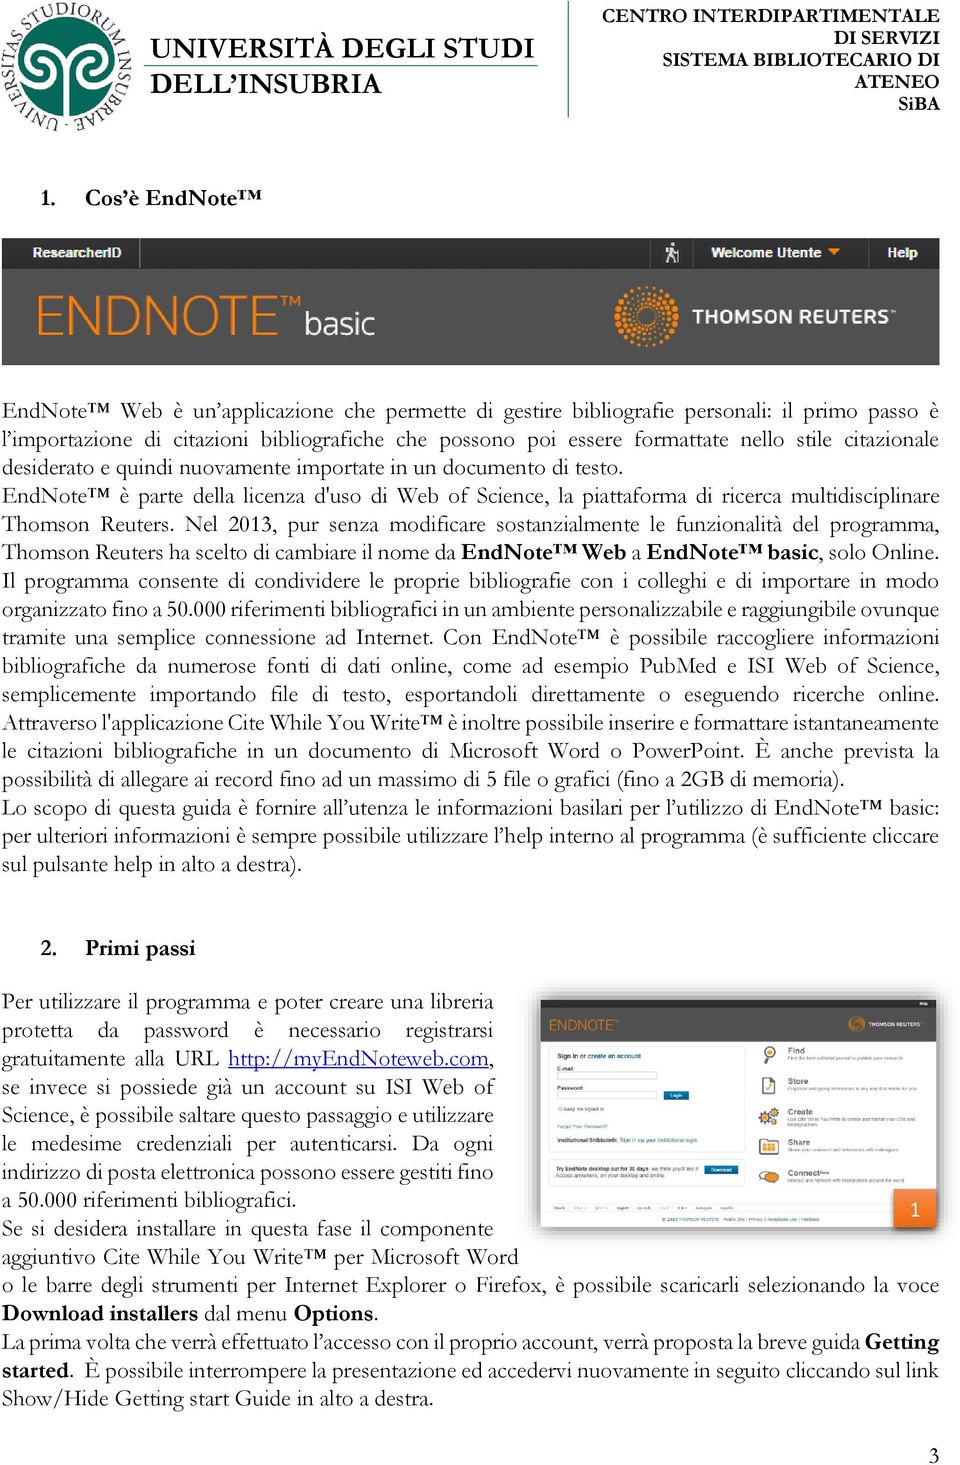 Nel 2013, pur senza modificare sostanzialmente le funzionalità del programma, Thomson Reuters ha scelto di cambiare il nome da EndNote Web a EndNote basic, solo Online.